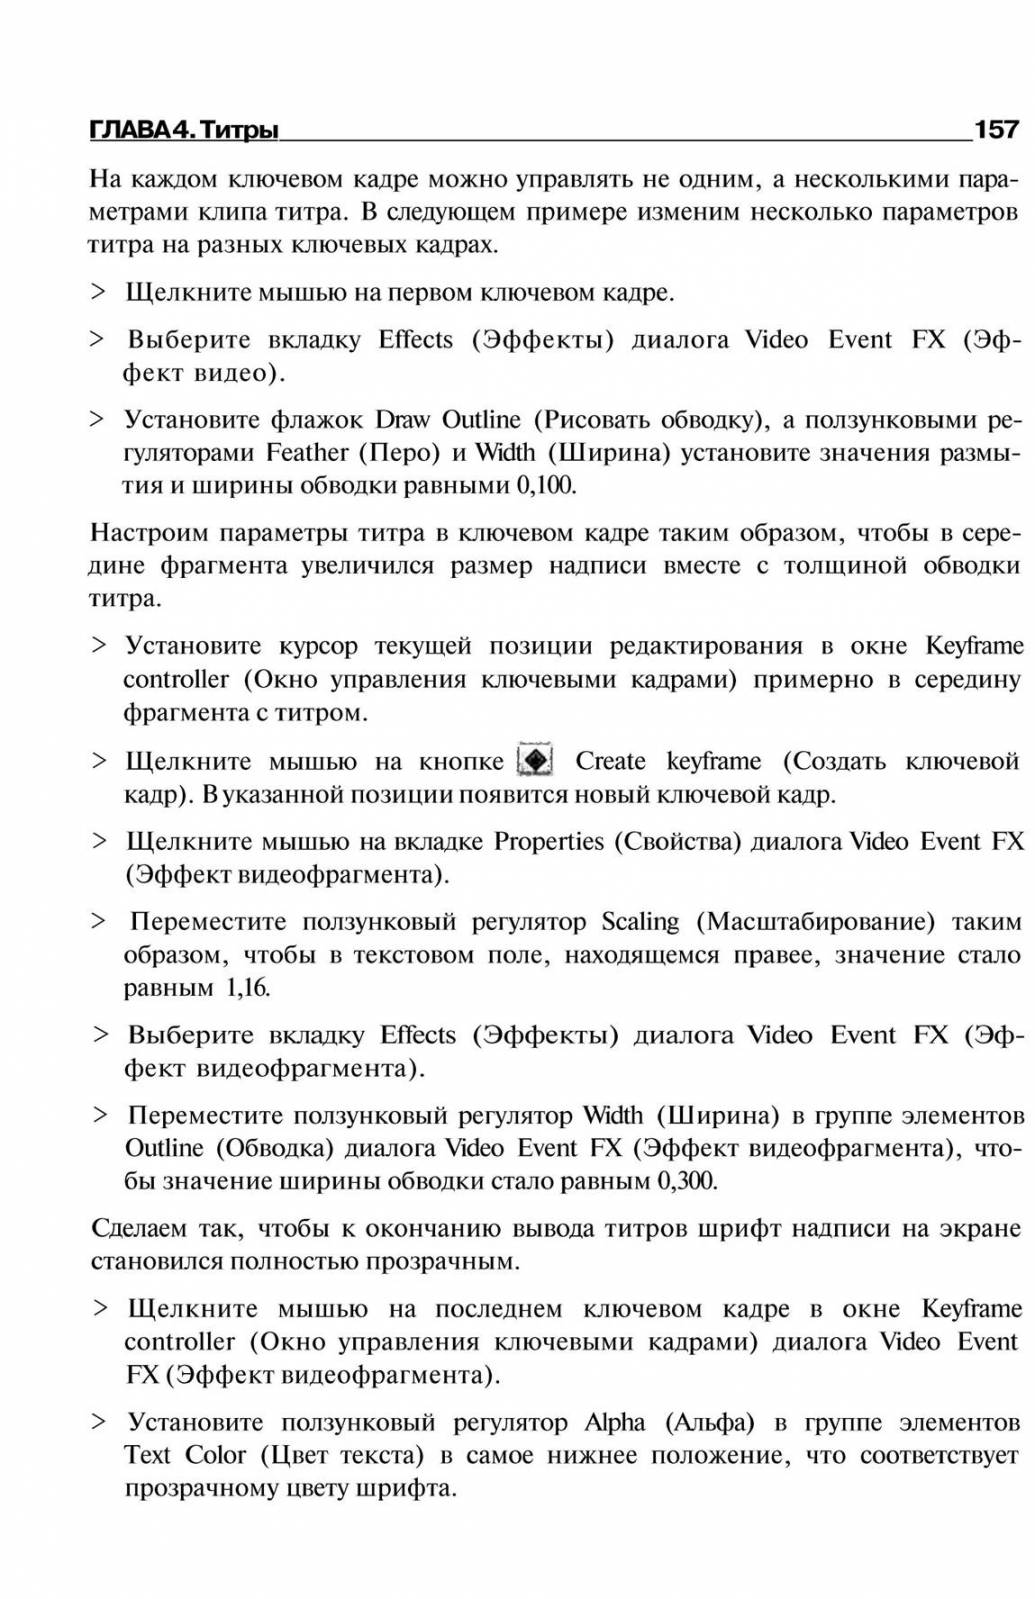 http://redaktori-uroki.3dn.ru/_ph/6/240157163.jpg